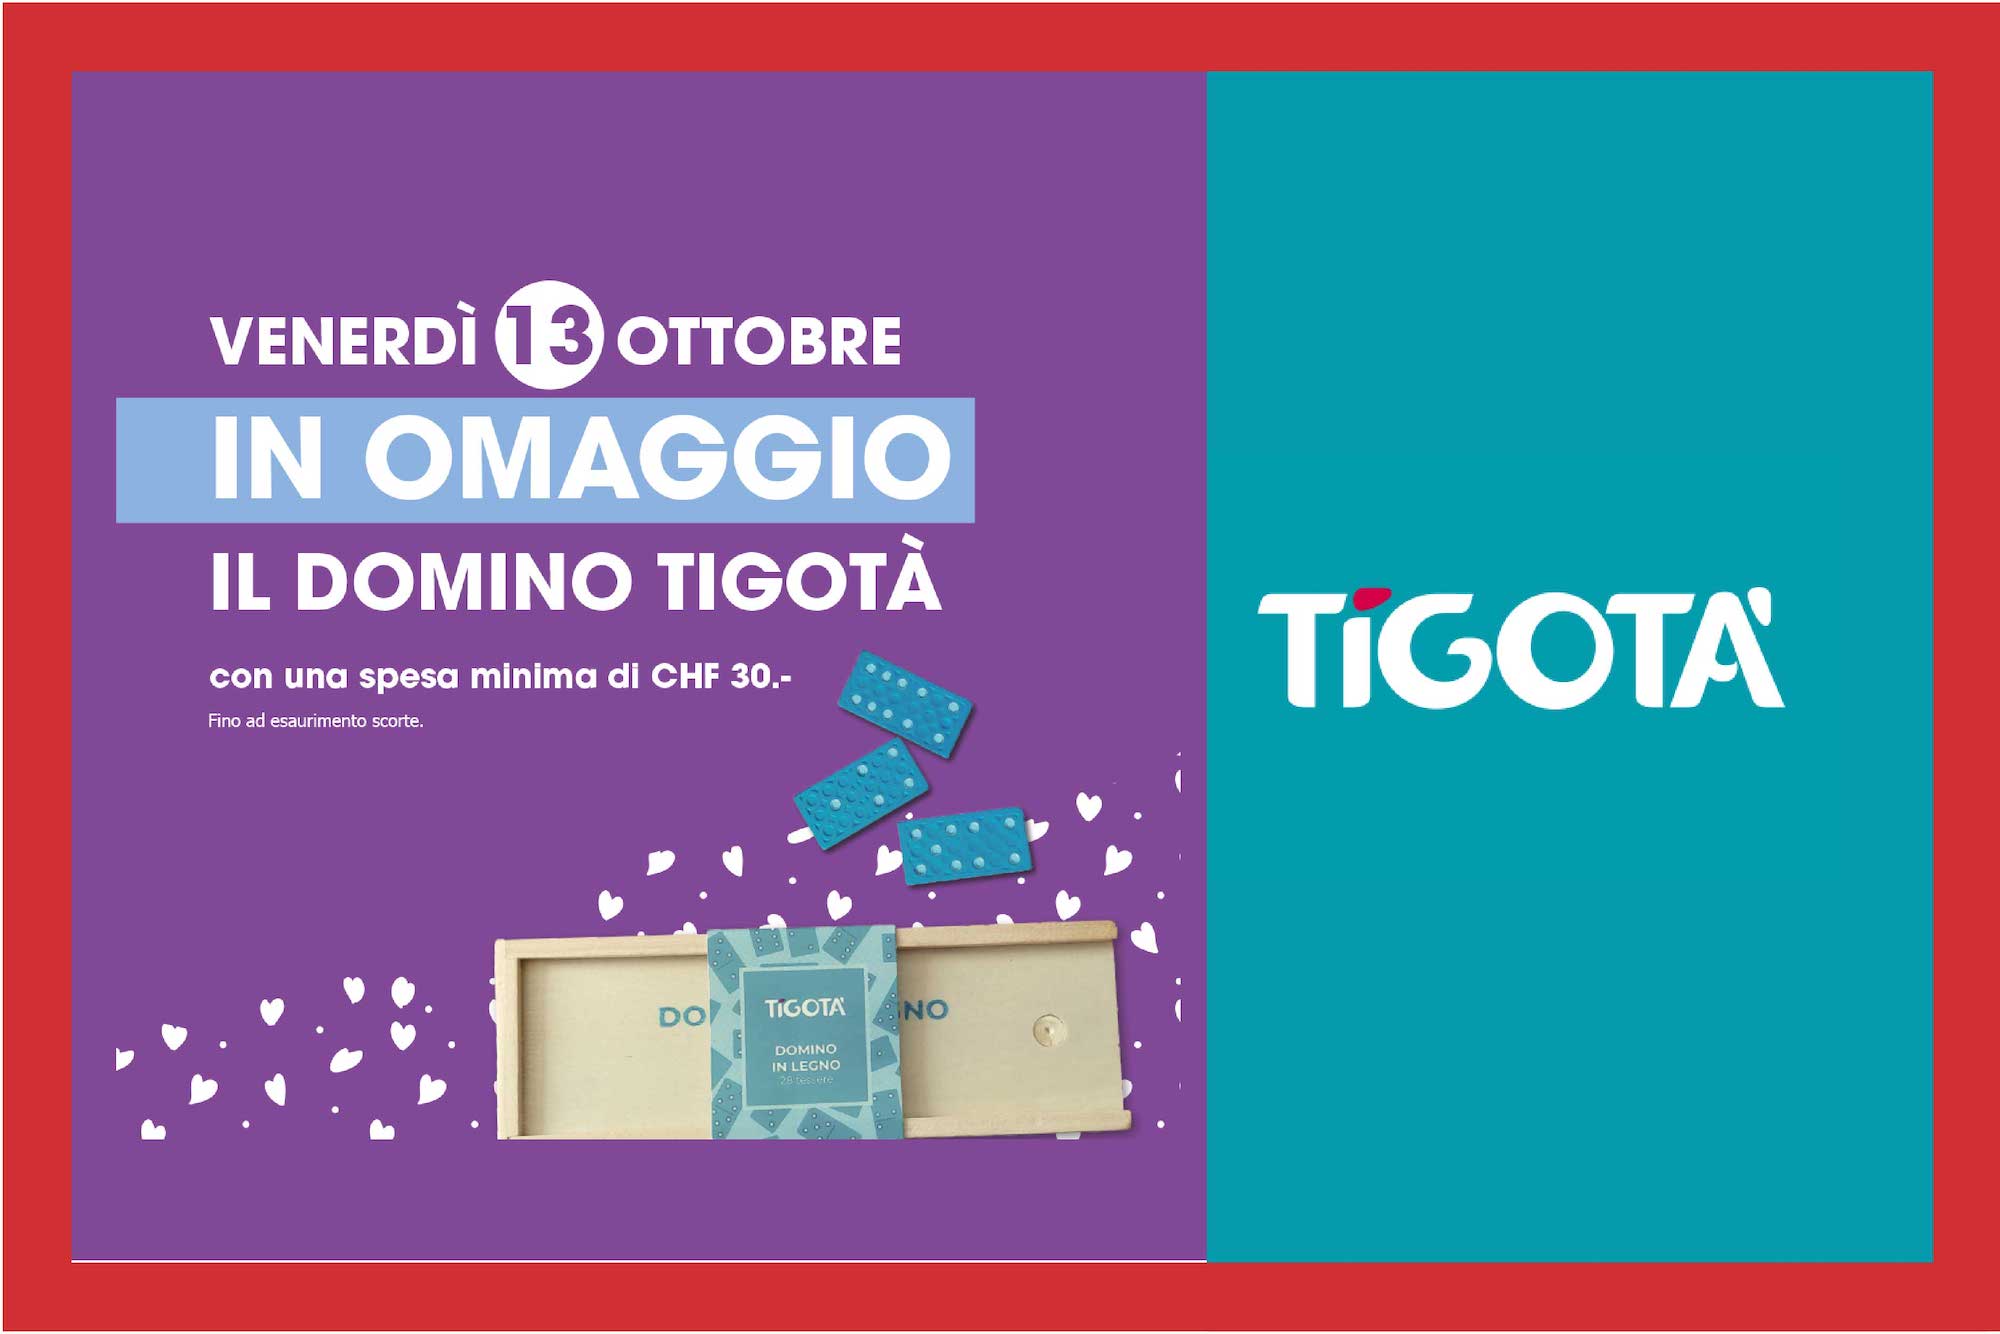 Omaggio Da Tigotà, un omaggio per il tuo tempo libero: il 13 ottobre, con una spesa minima di CHF 30.-, in omaggio il domino Tigotà. Buon divertimento con Tigotà 😊